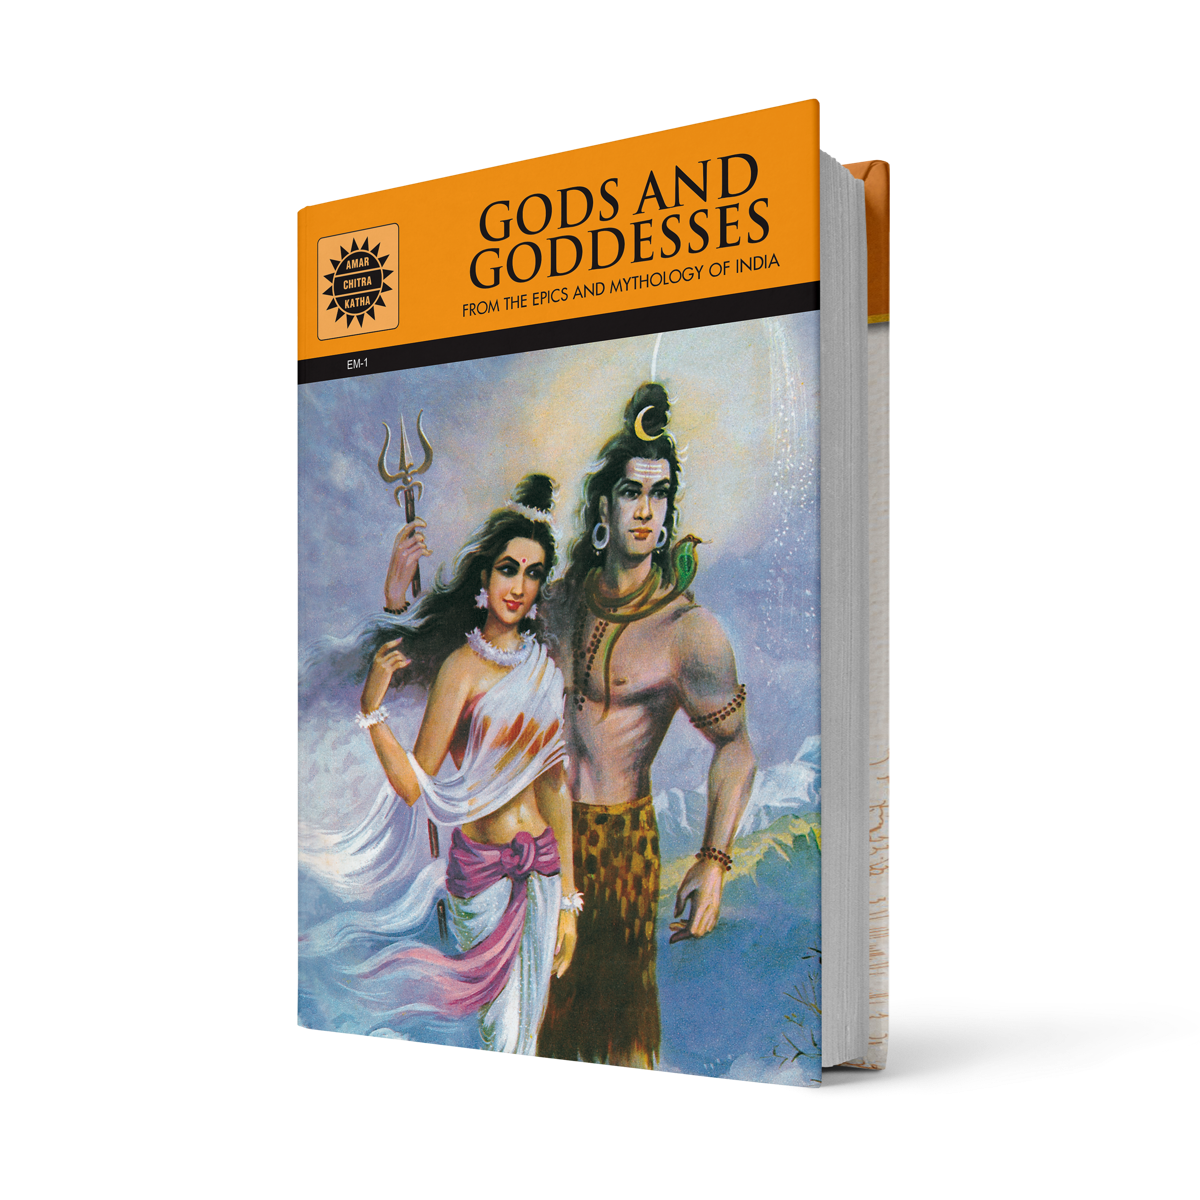 Gods and Goddesses: 22 Stories Set